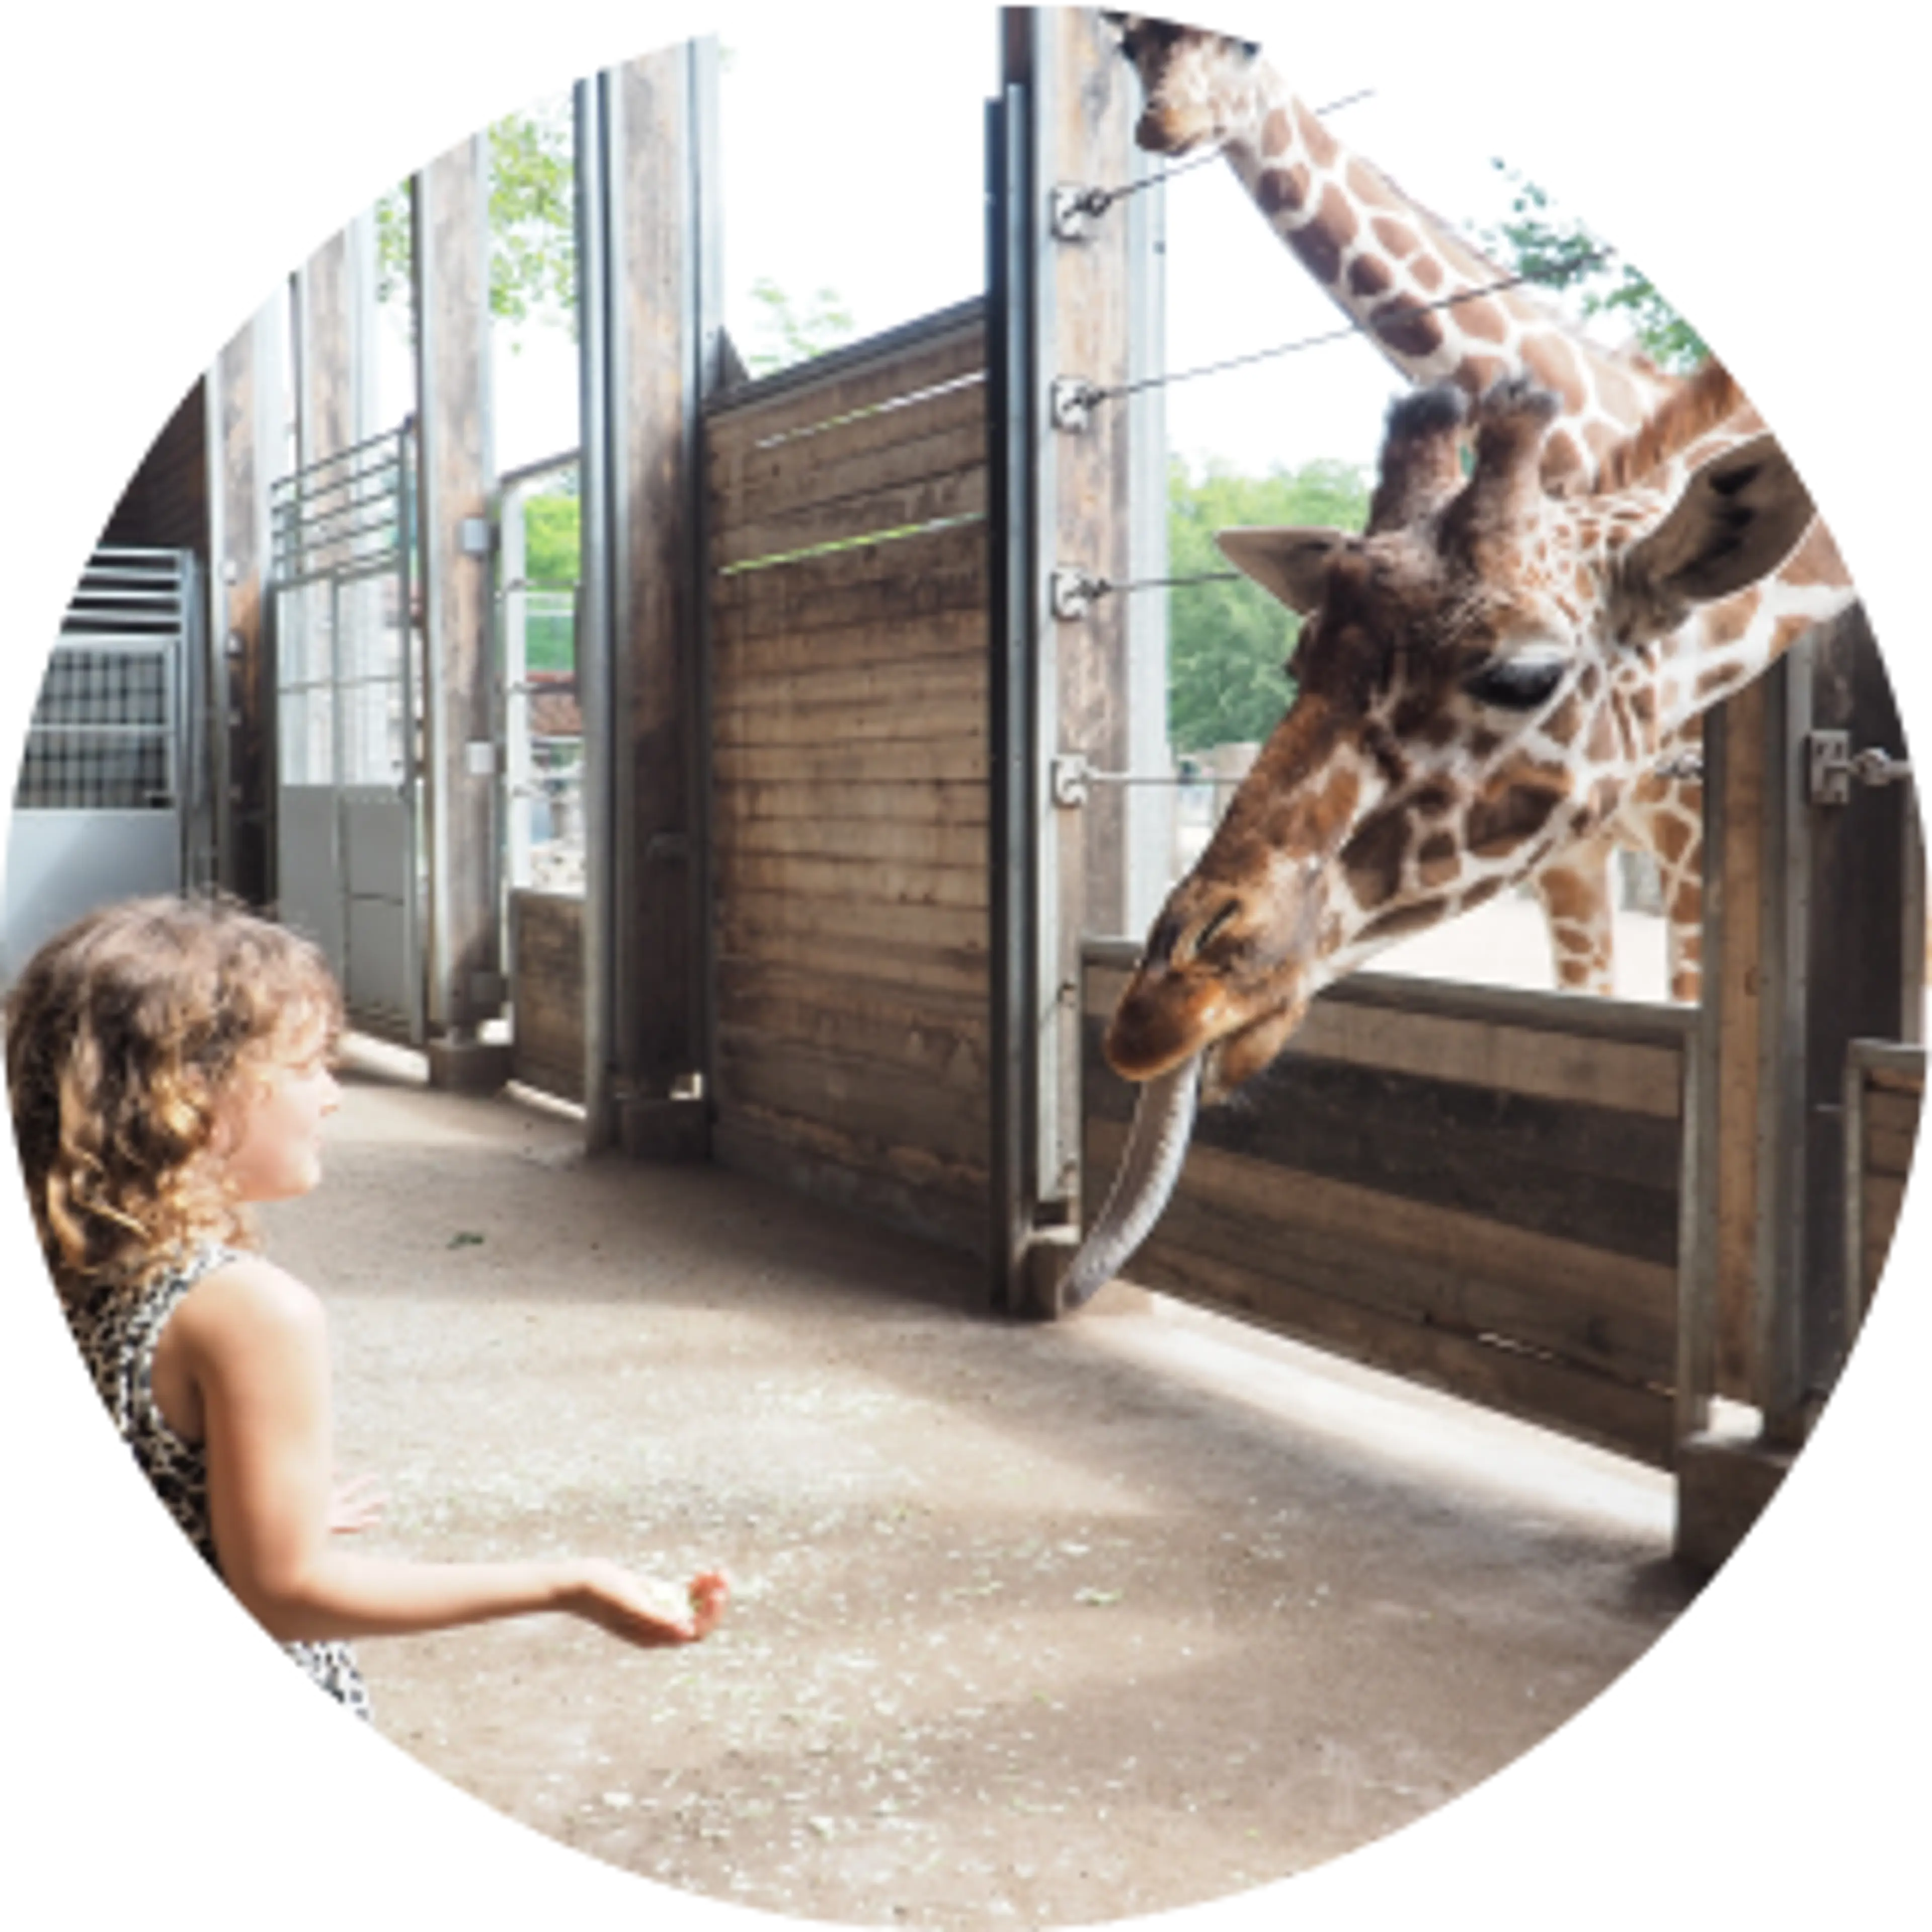 Pige fodrer giraf